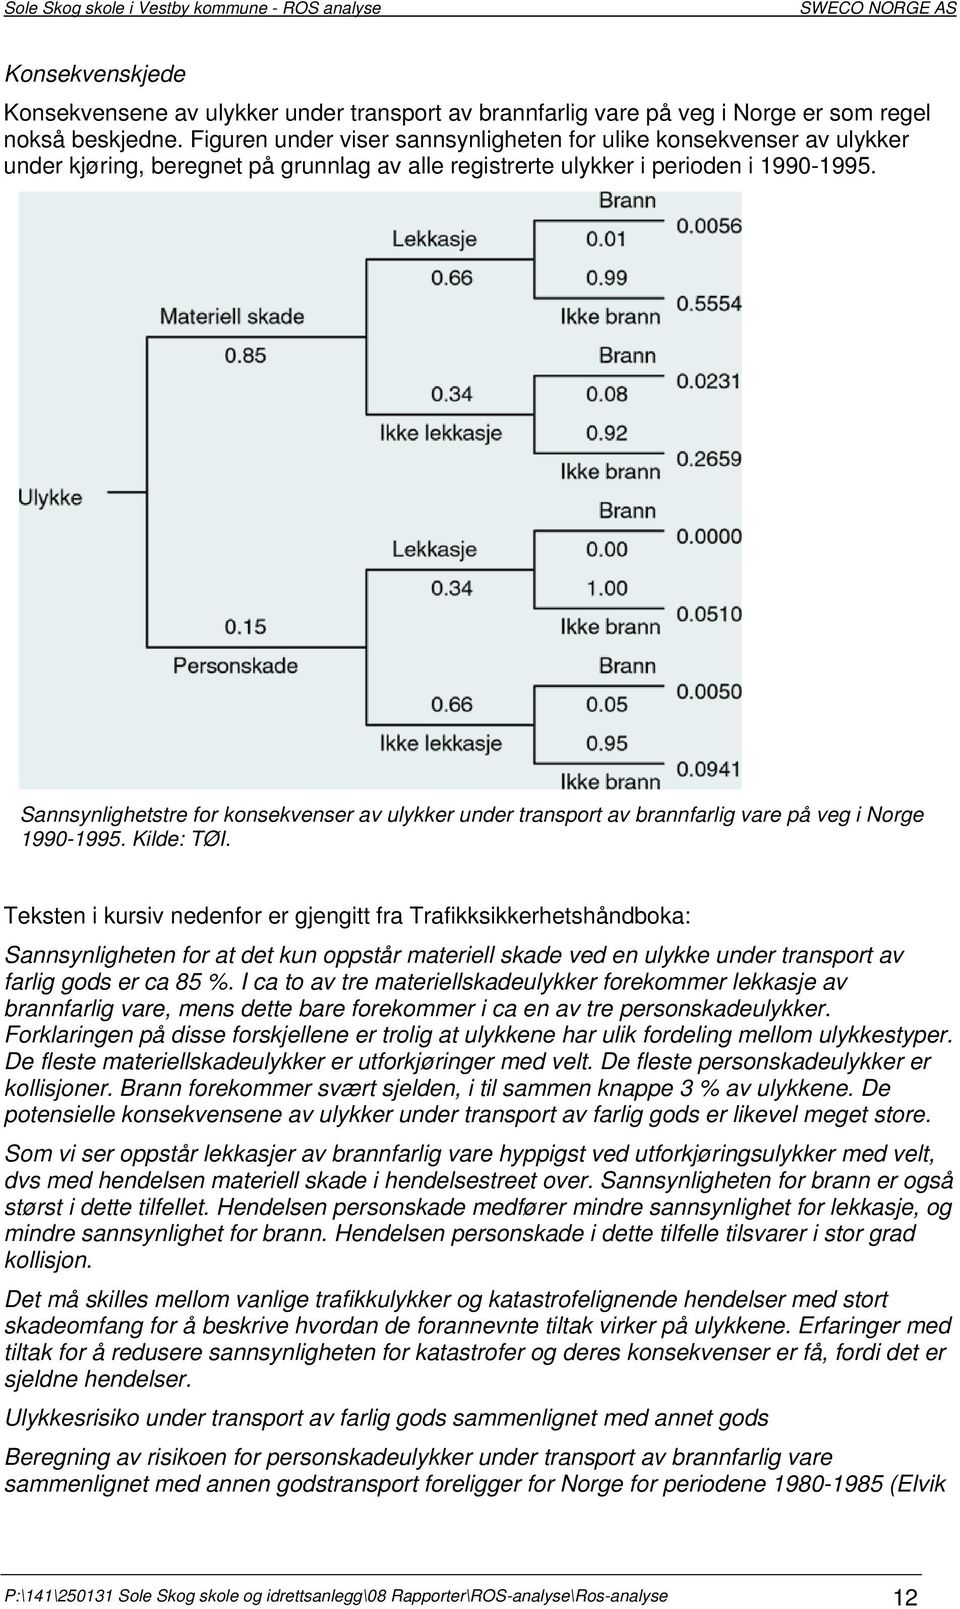 Sannsynlighetstre for konsekvenser av ulykker under transport av brannfarlig vare på veg i Norge 1990-1995. Kilde: TØI.